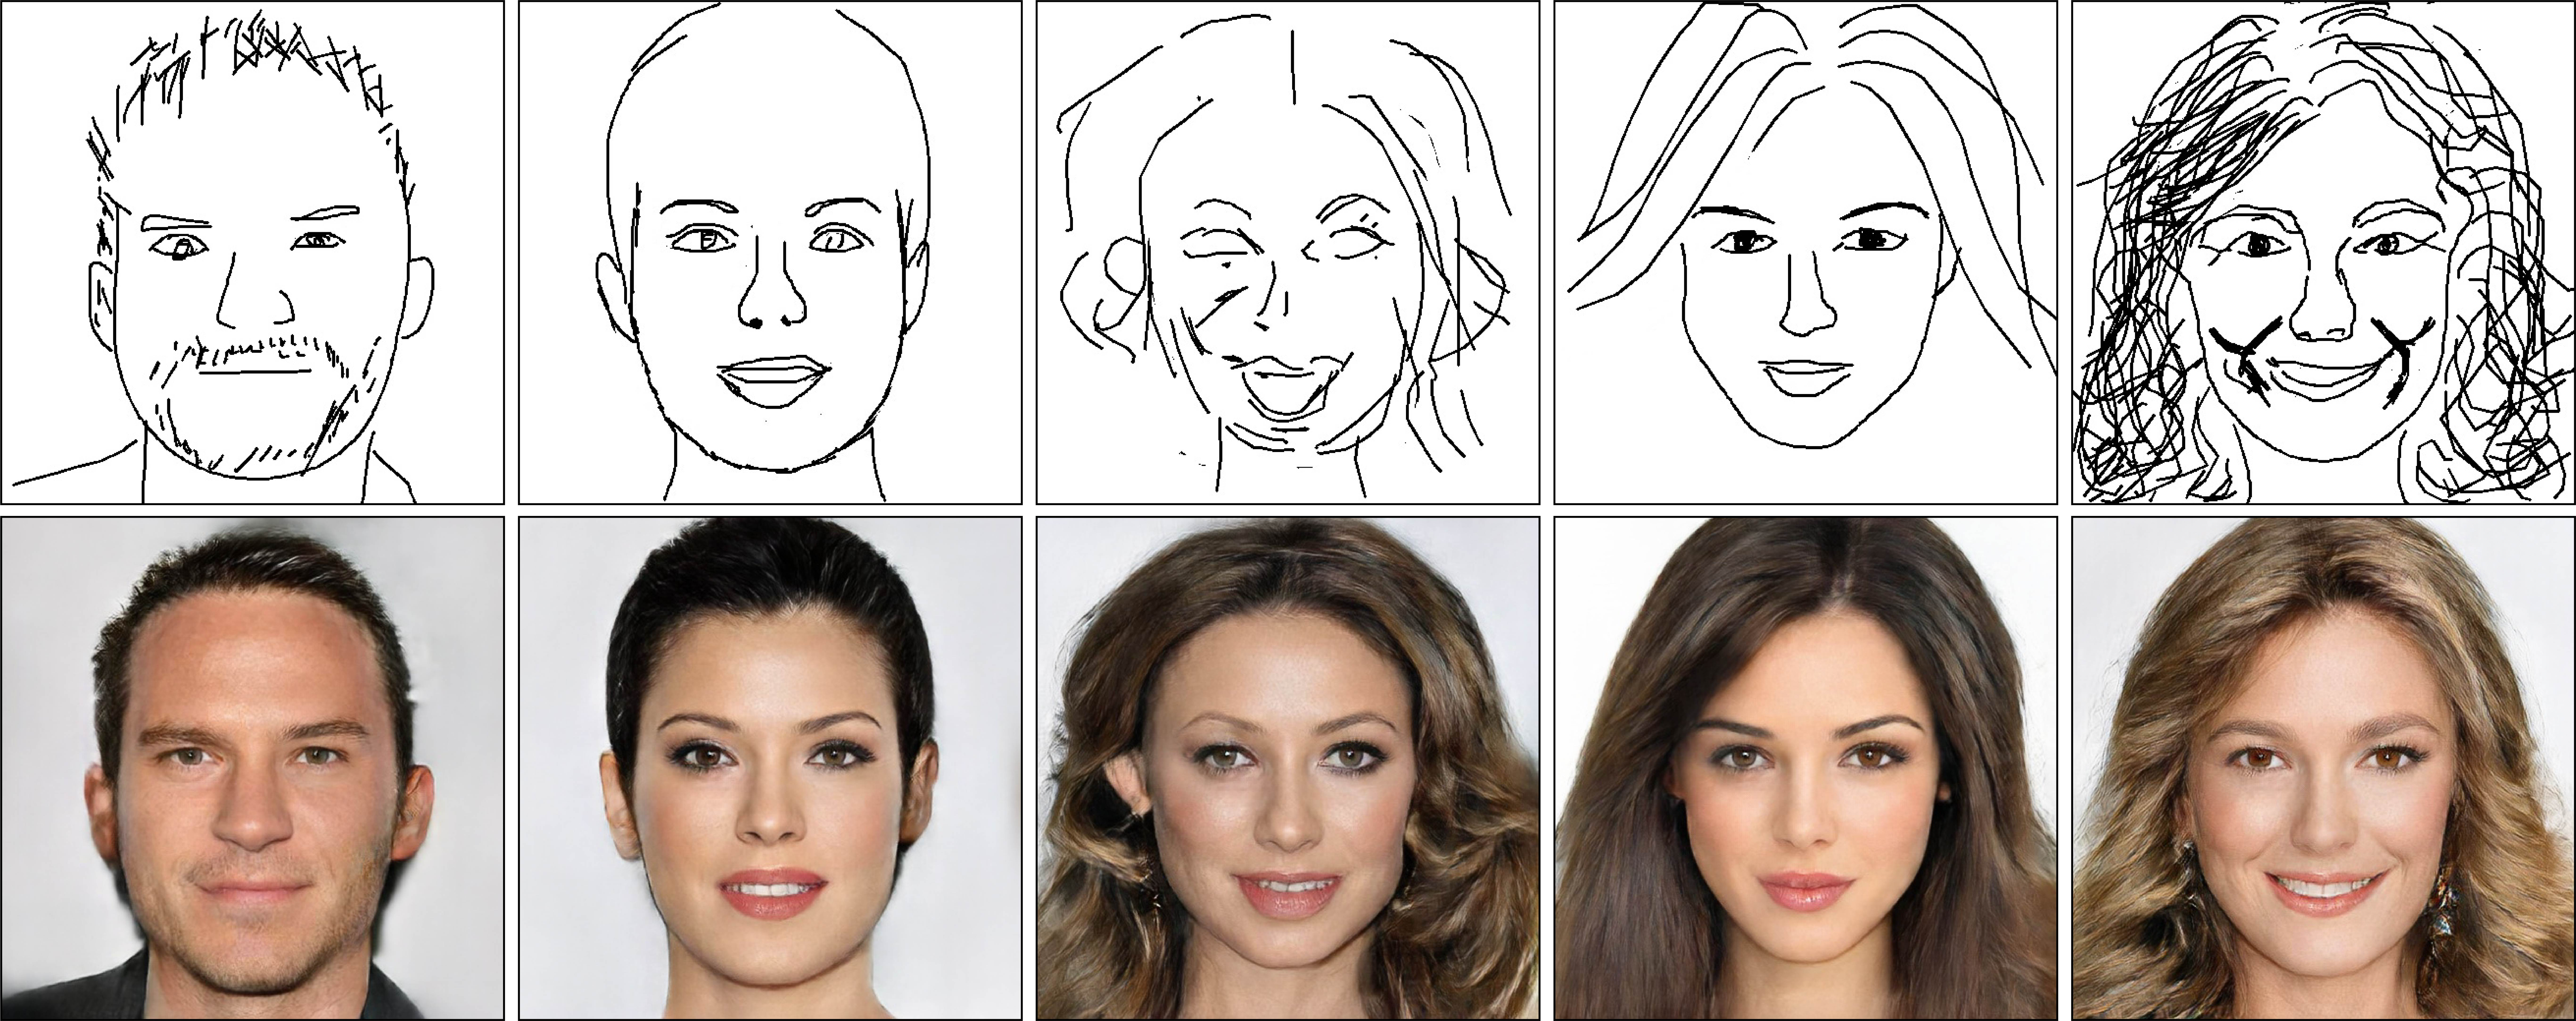 フリーハンドで描いた似顔絵が リアルな顔写真に変換される学習アプリが登場 年6月11日 エキサイトニュース